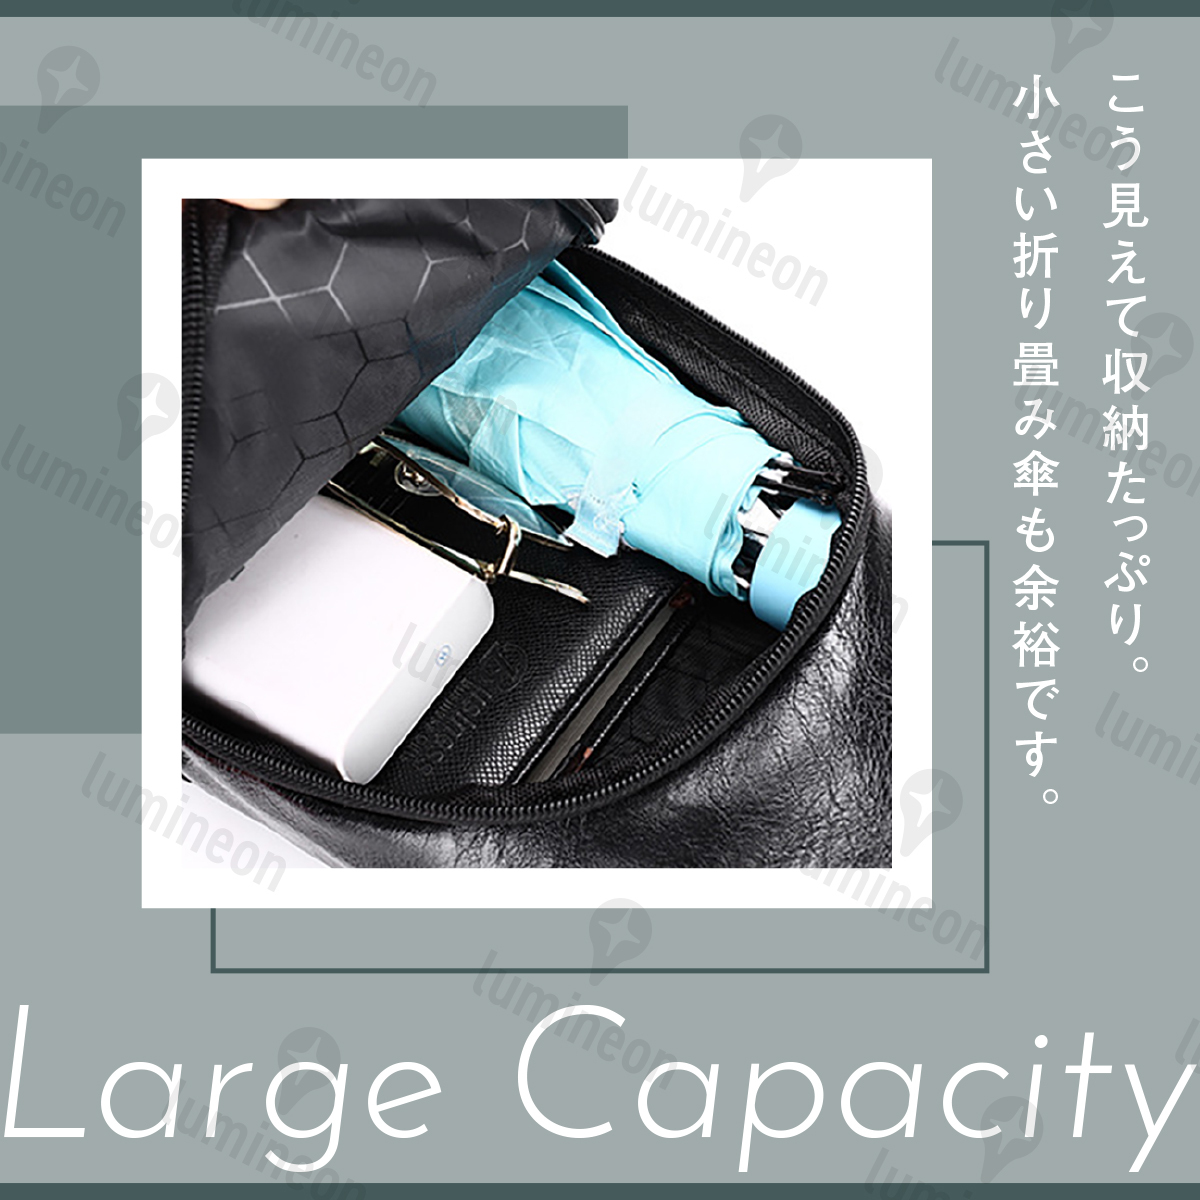 新品アウトレット ボディバッグ メンズ コード穴 多機能 撥水 大きめ 黒 レザー カバン ショルダー バッグ ブラック 20代-50代 g045aA 3